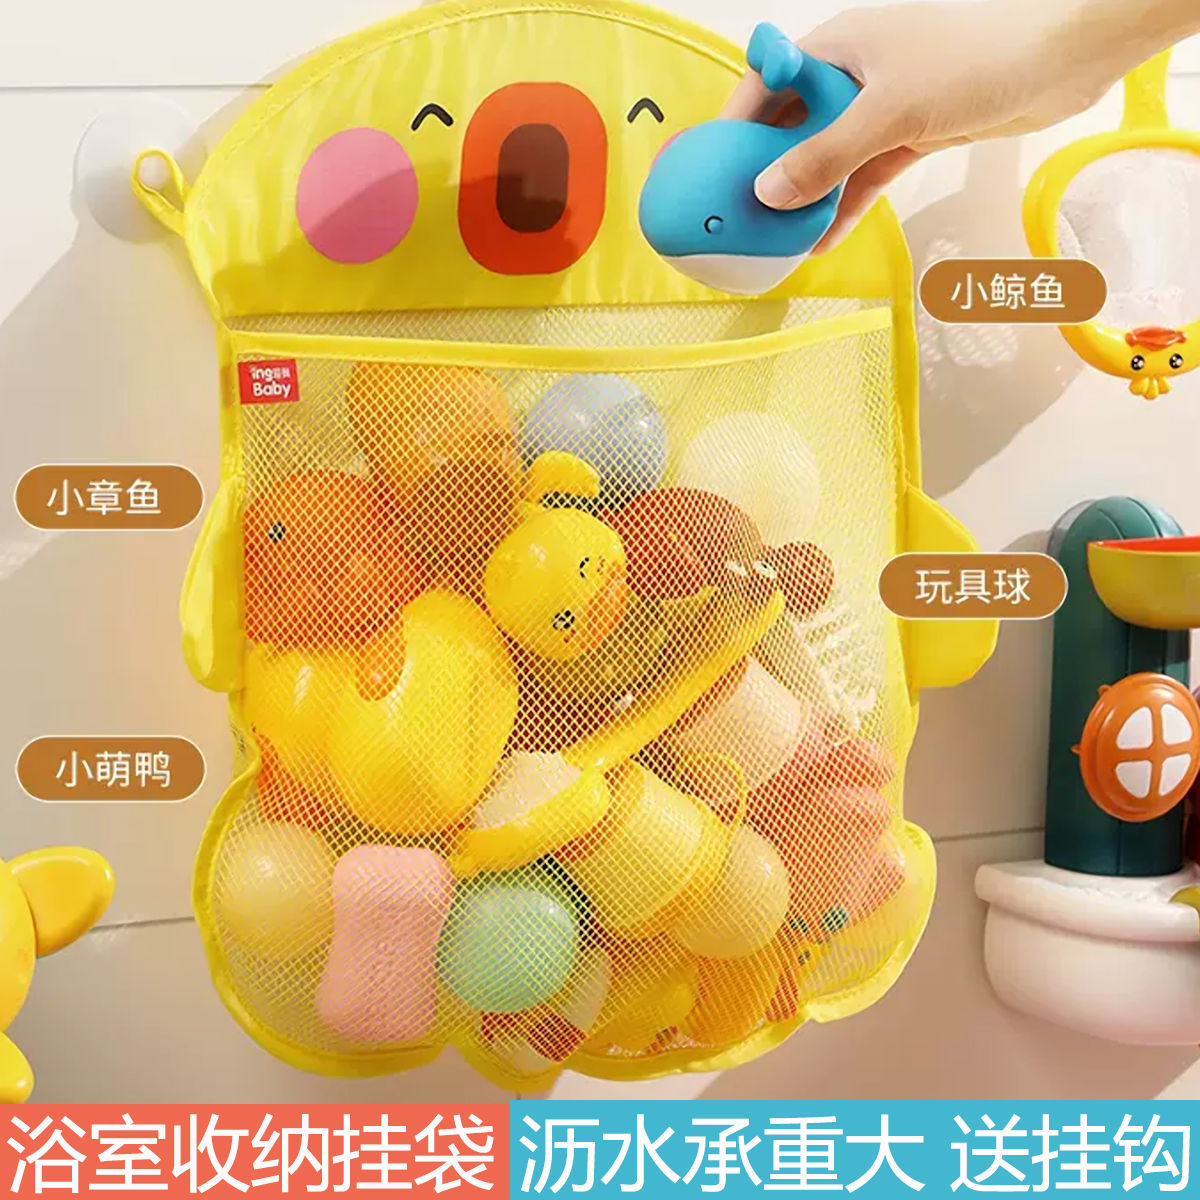 黄鸭收纳网袋玩具兜儿童洗澡玩具防水沥干卡通恐龙浴室带吸盘挂袋